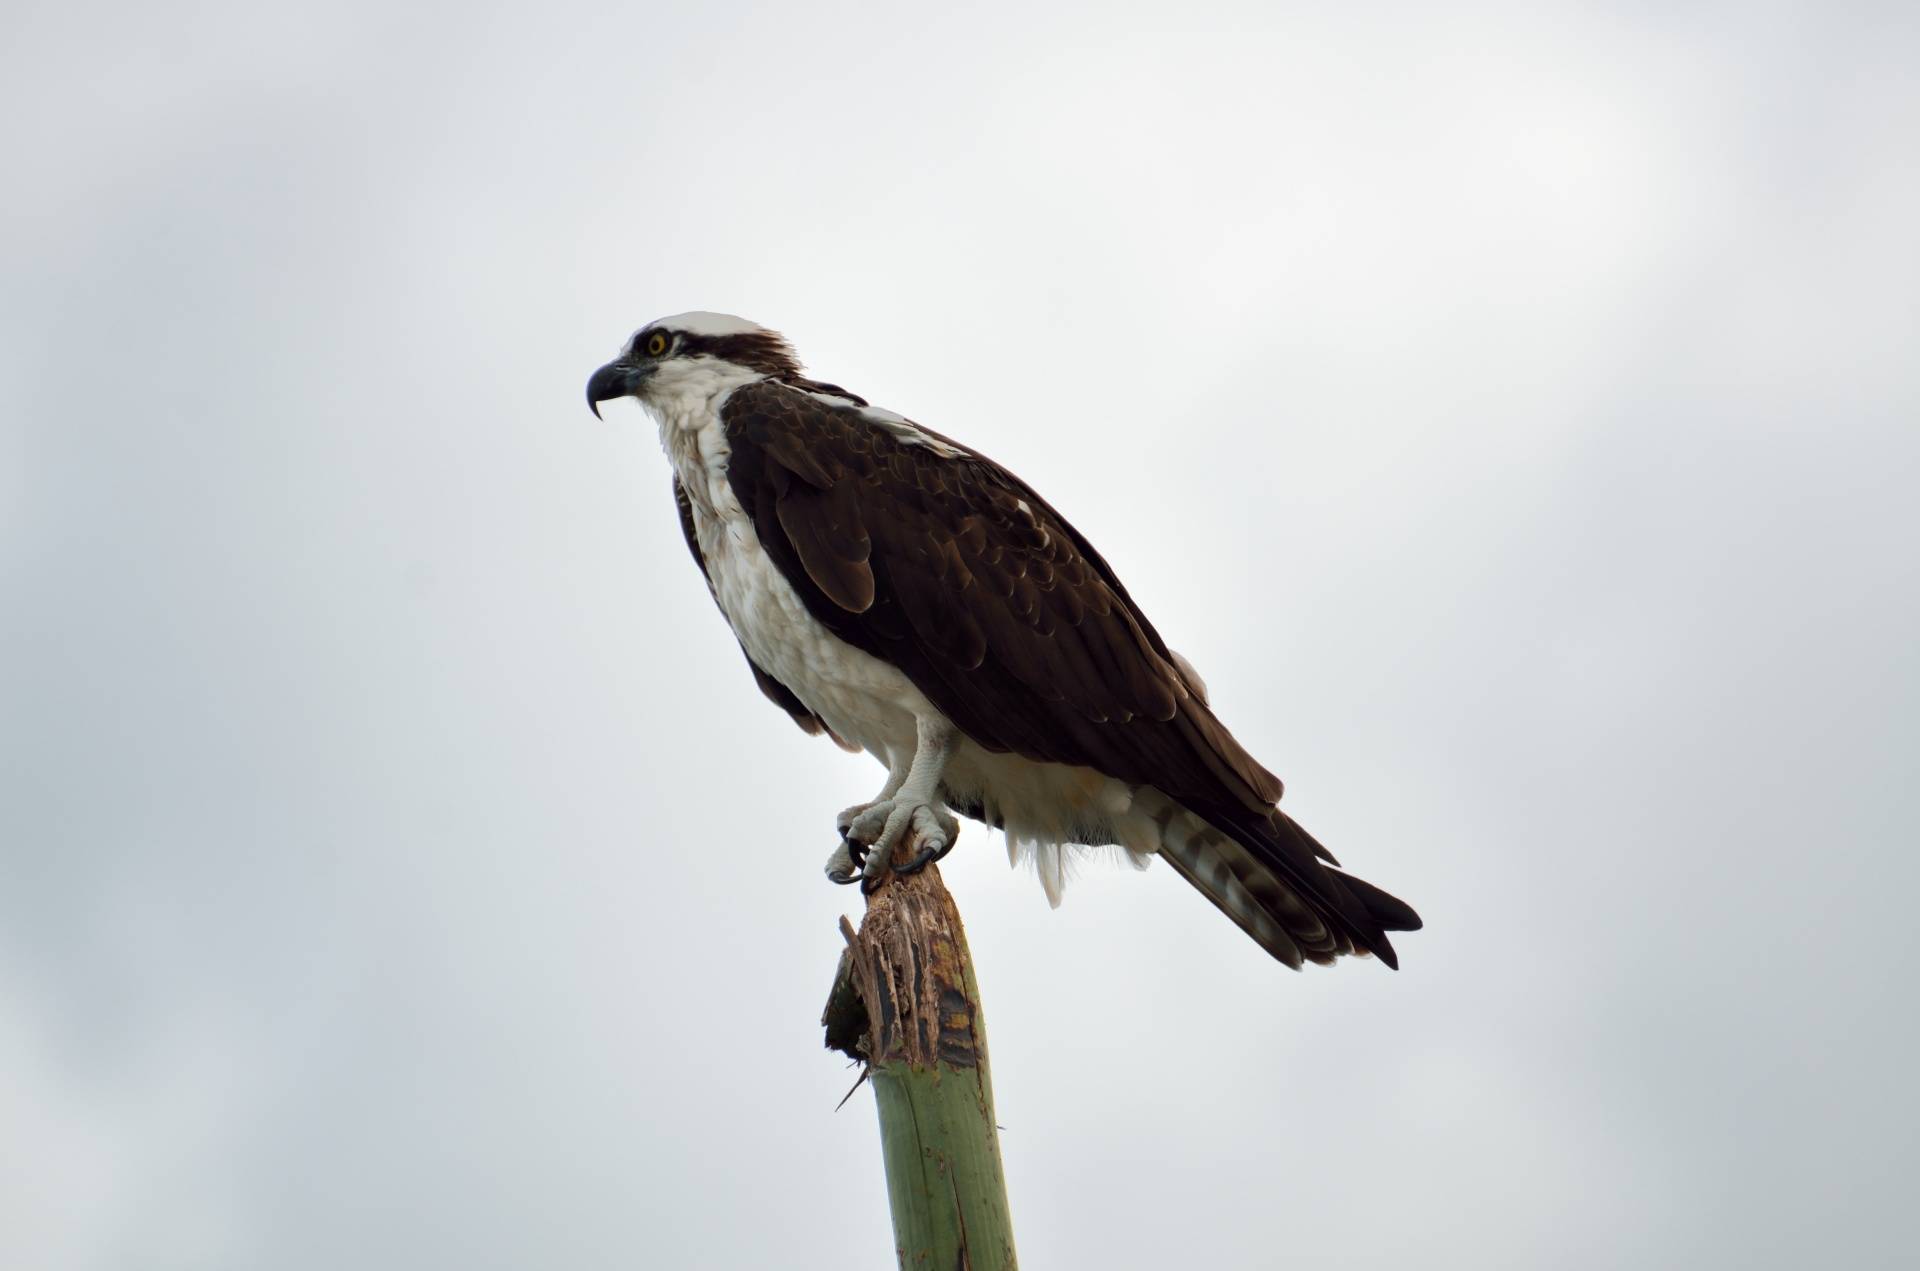 Land bank provides platform for osprey nests